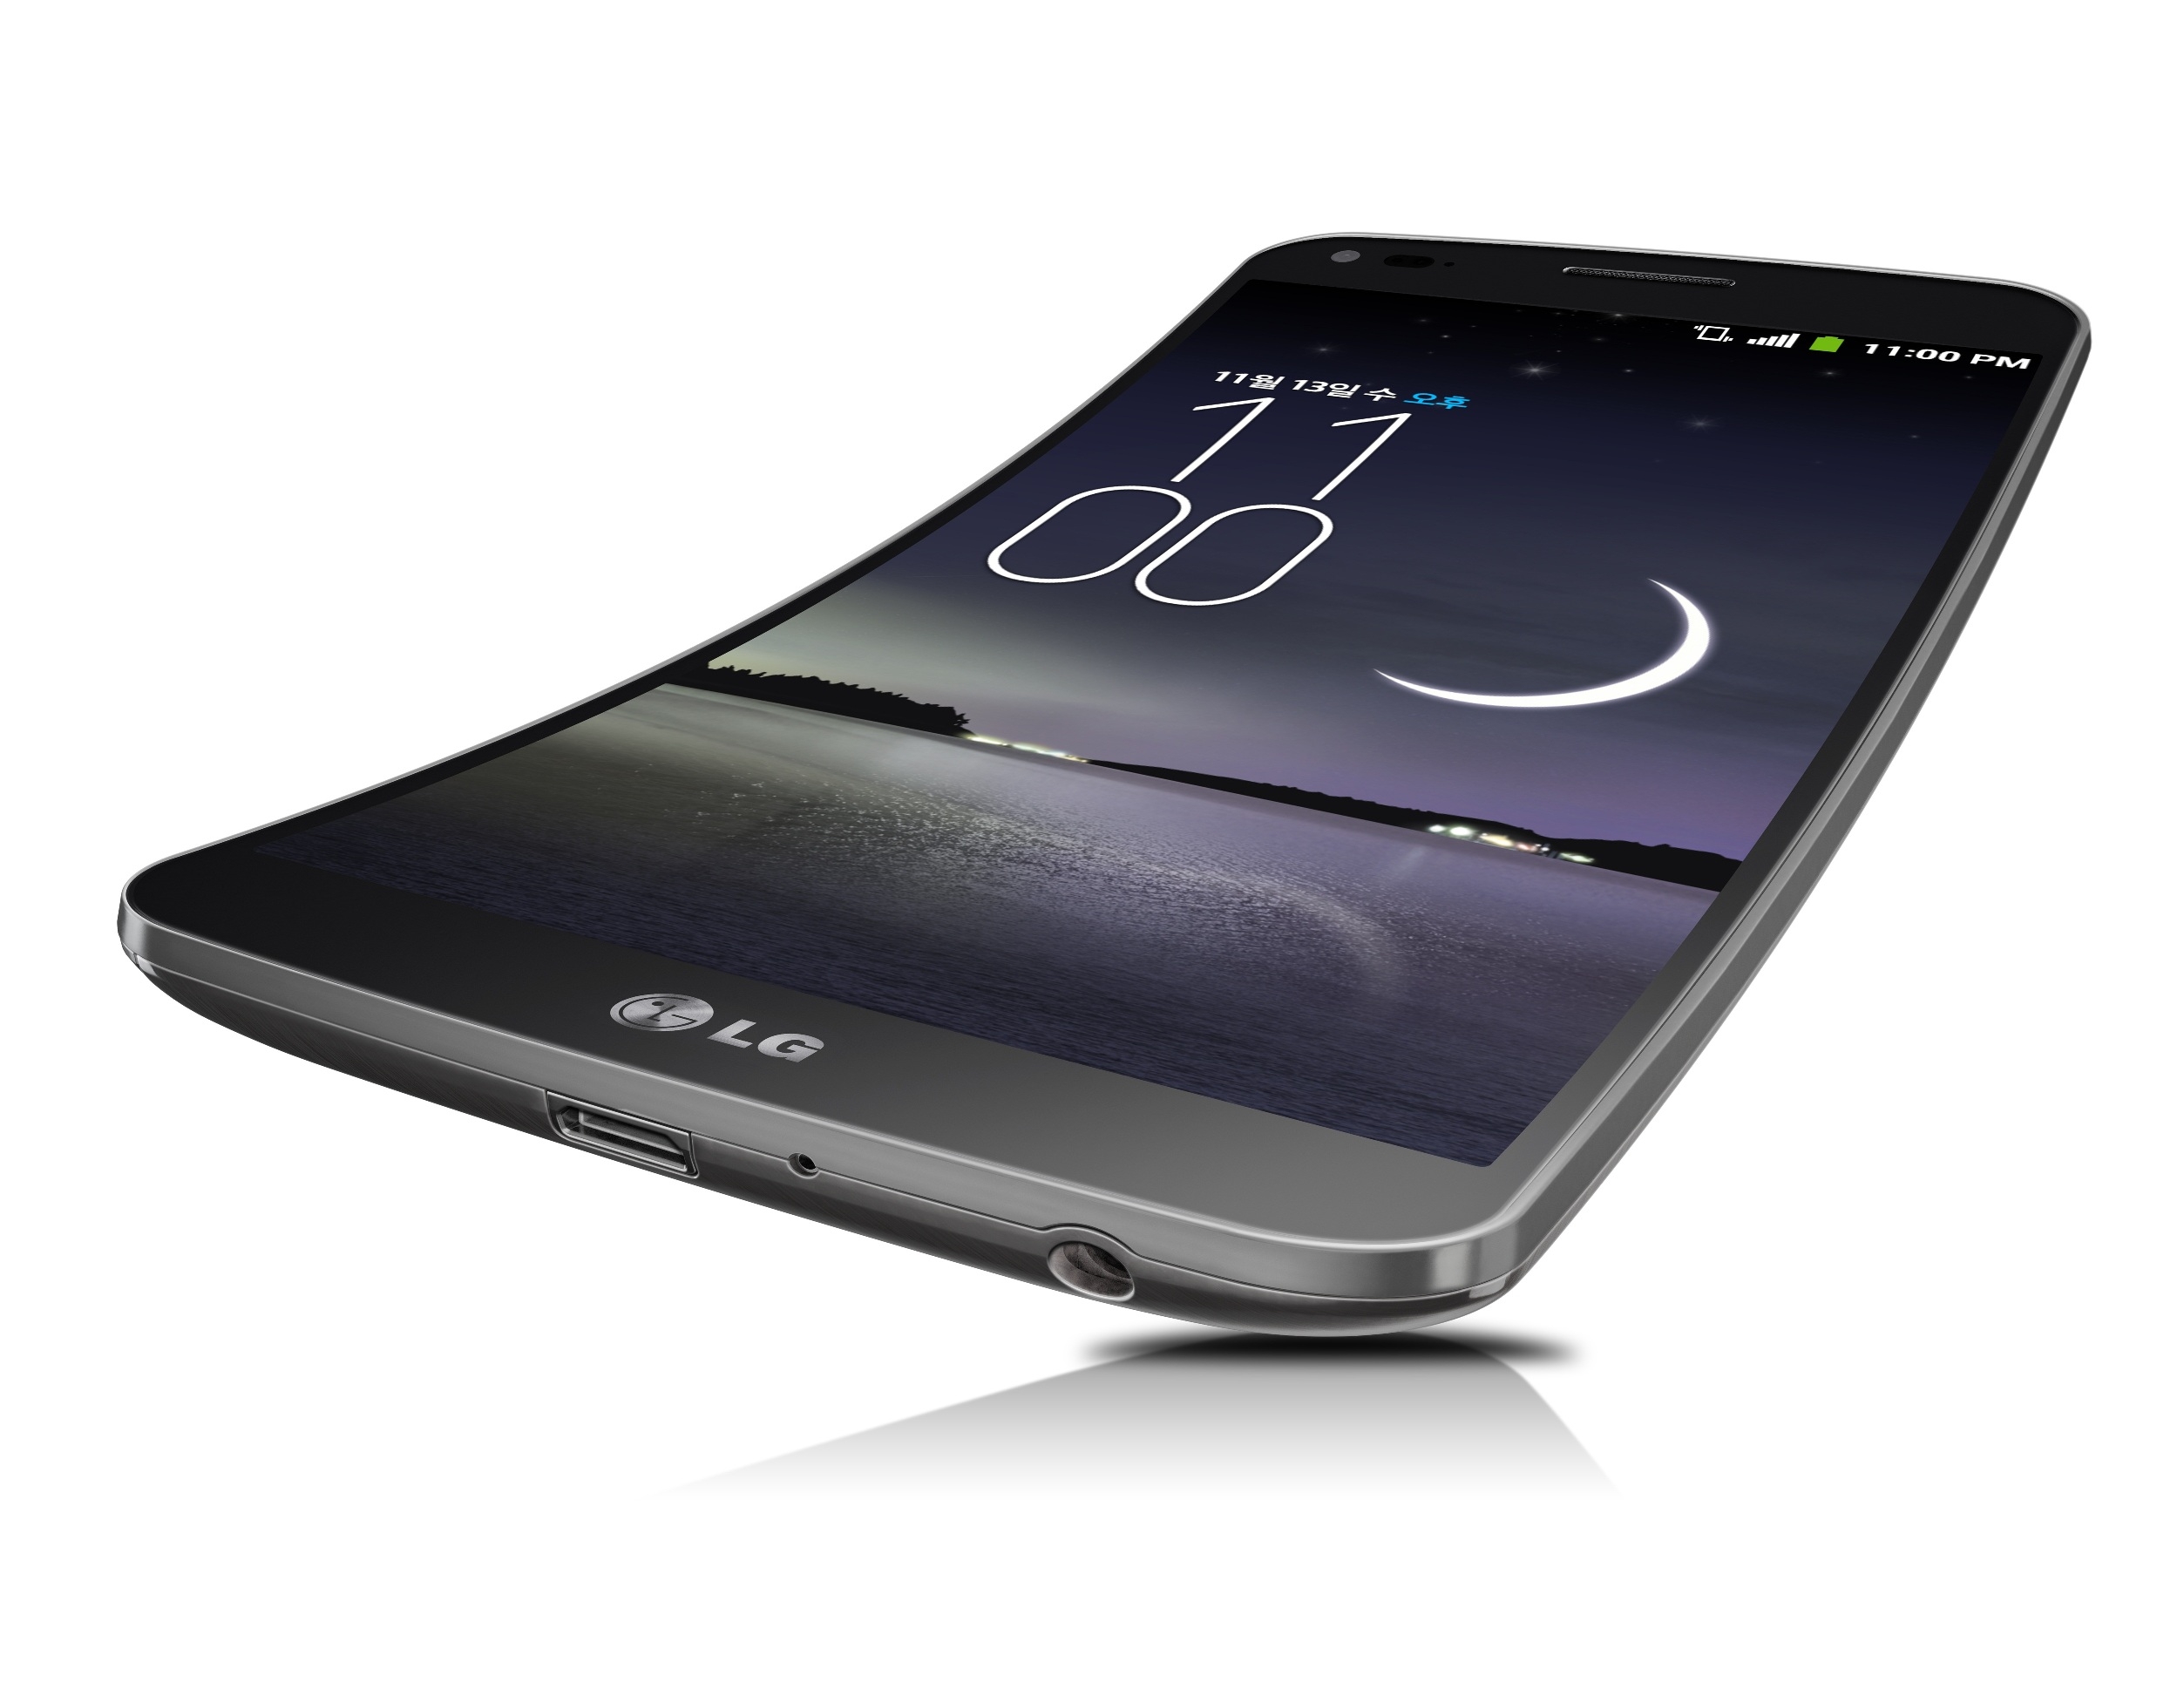 H LG επιχειρηματολογεί υπέρ των κάθετα καμπυλωτών smartphone με το G Flex